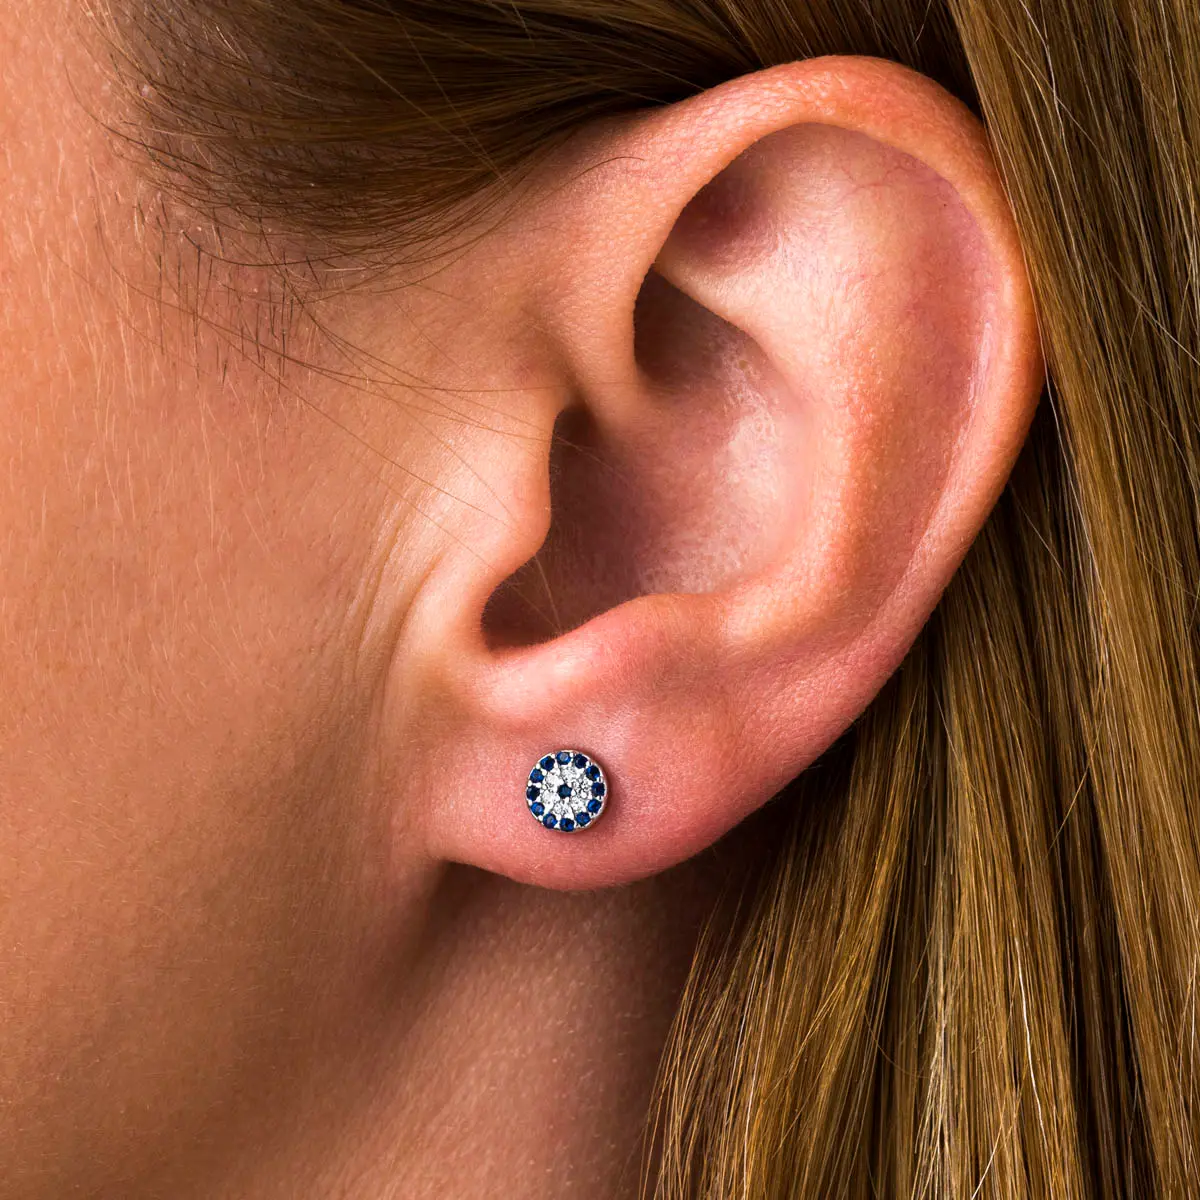 Silver Blue Eye Stud Earrings With Zircon